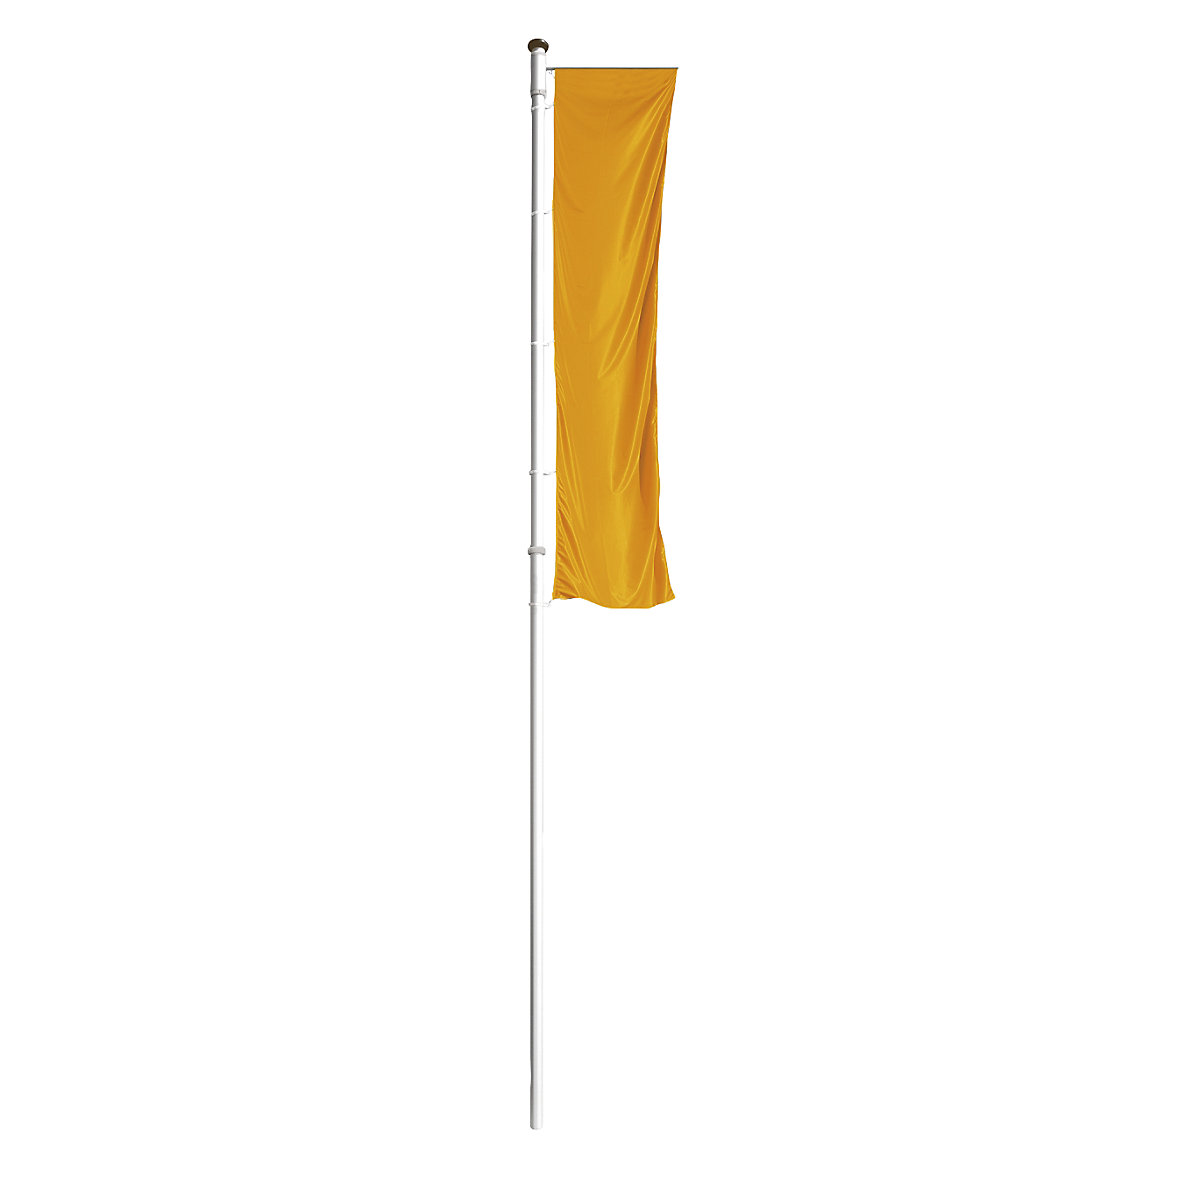 PRESTIGE aluminium flag pole - Mannus